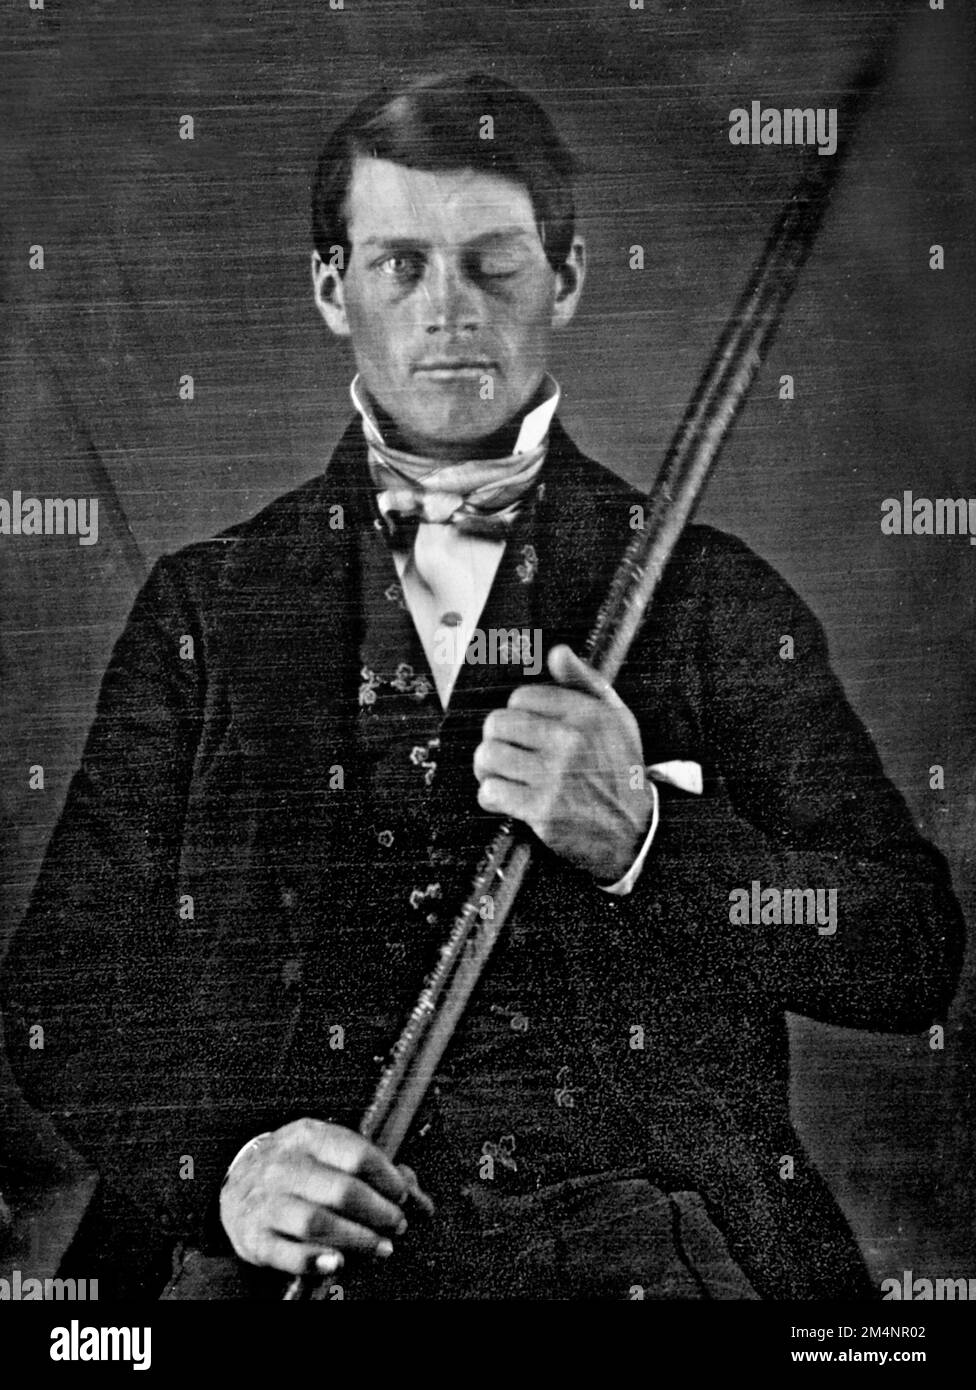 Phineas Gage. Foto von Phineas P. Gage (1823–1860), einem amerikanischen Vorarbeiter für den Bau von Eisenbahnstrecken, der für sein unwahrscheinliches Überleben eines Unfalls bekannt ist, bei dem ein großer Eisenstab vollständig durch seinen Kopf getrieben wurde und einen Großteil des linken Stirnlappens seines Gehirns zerstörte. Stockfoto